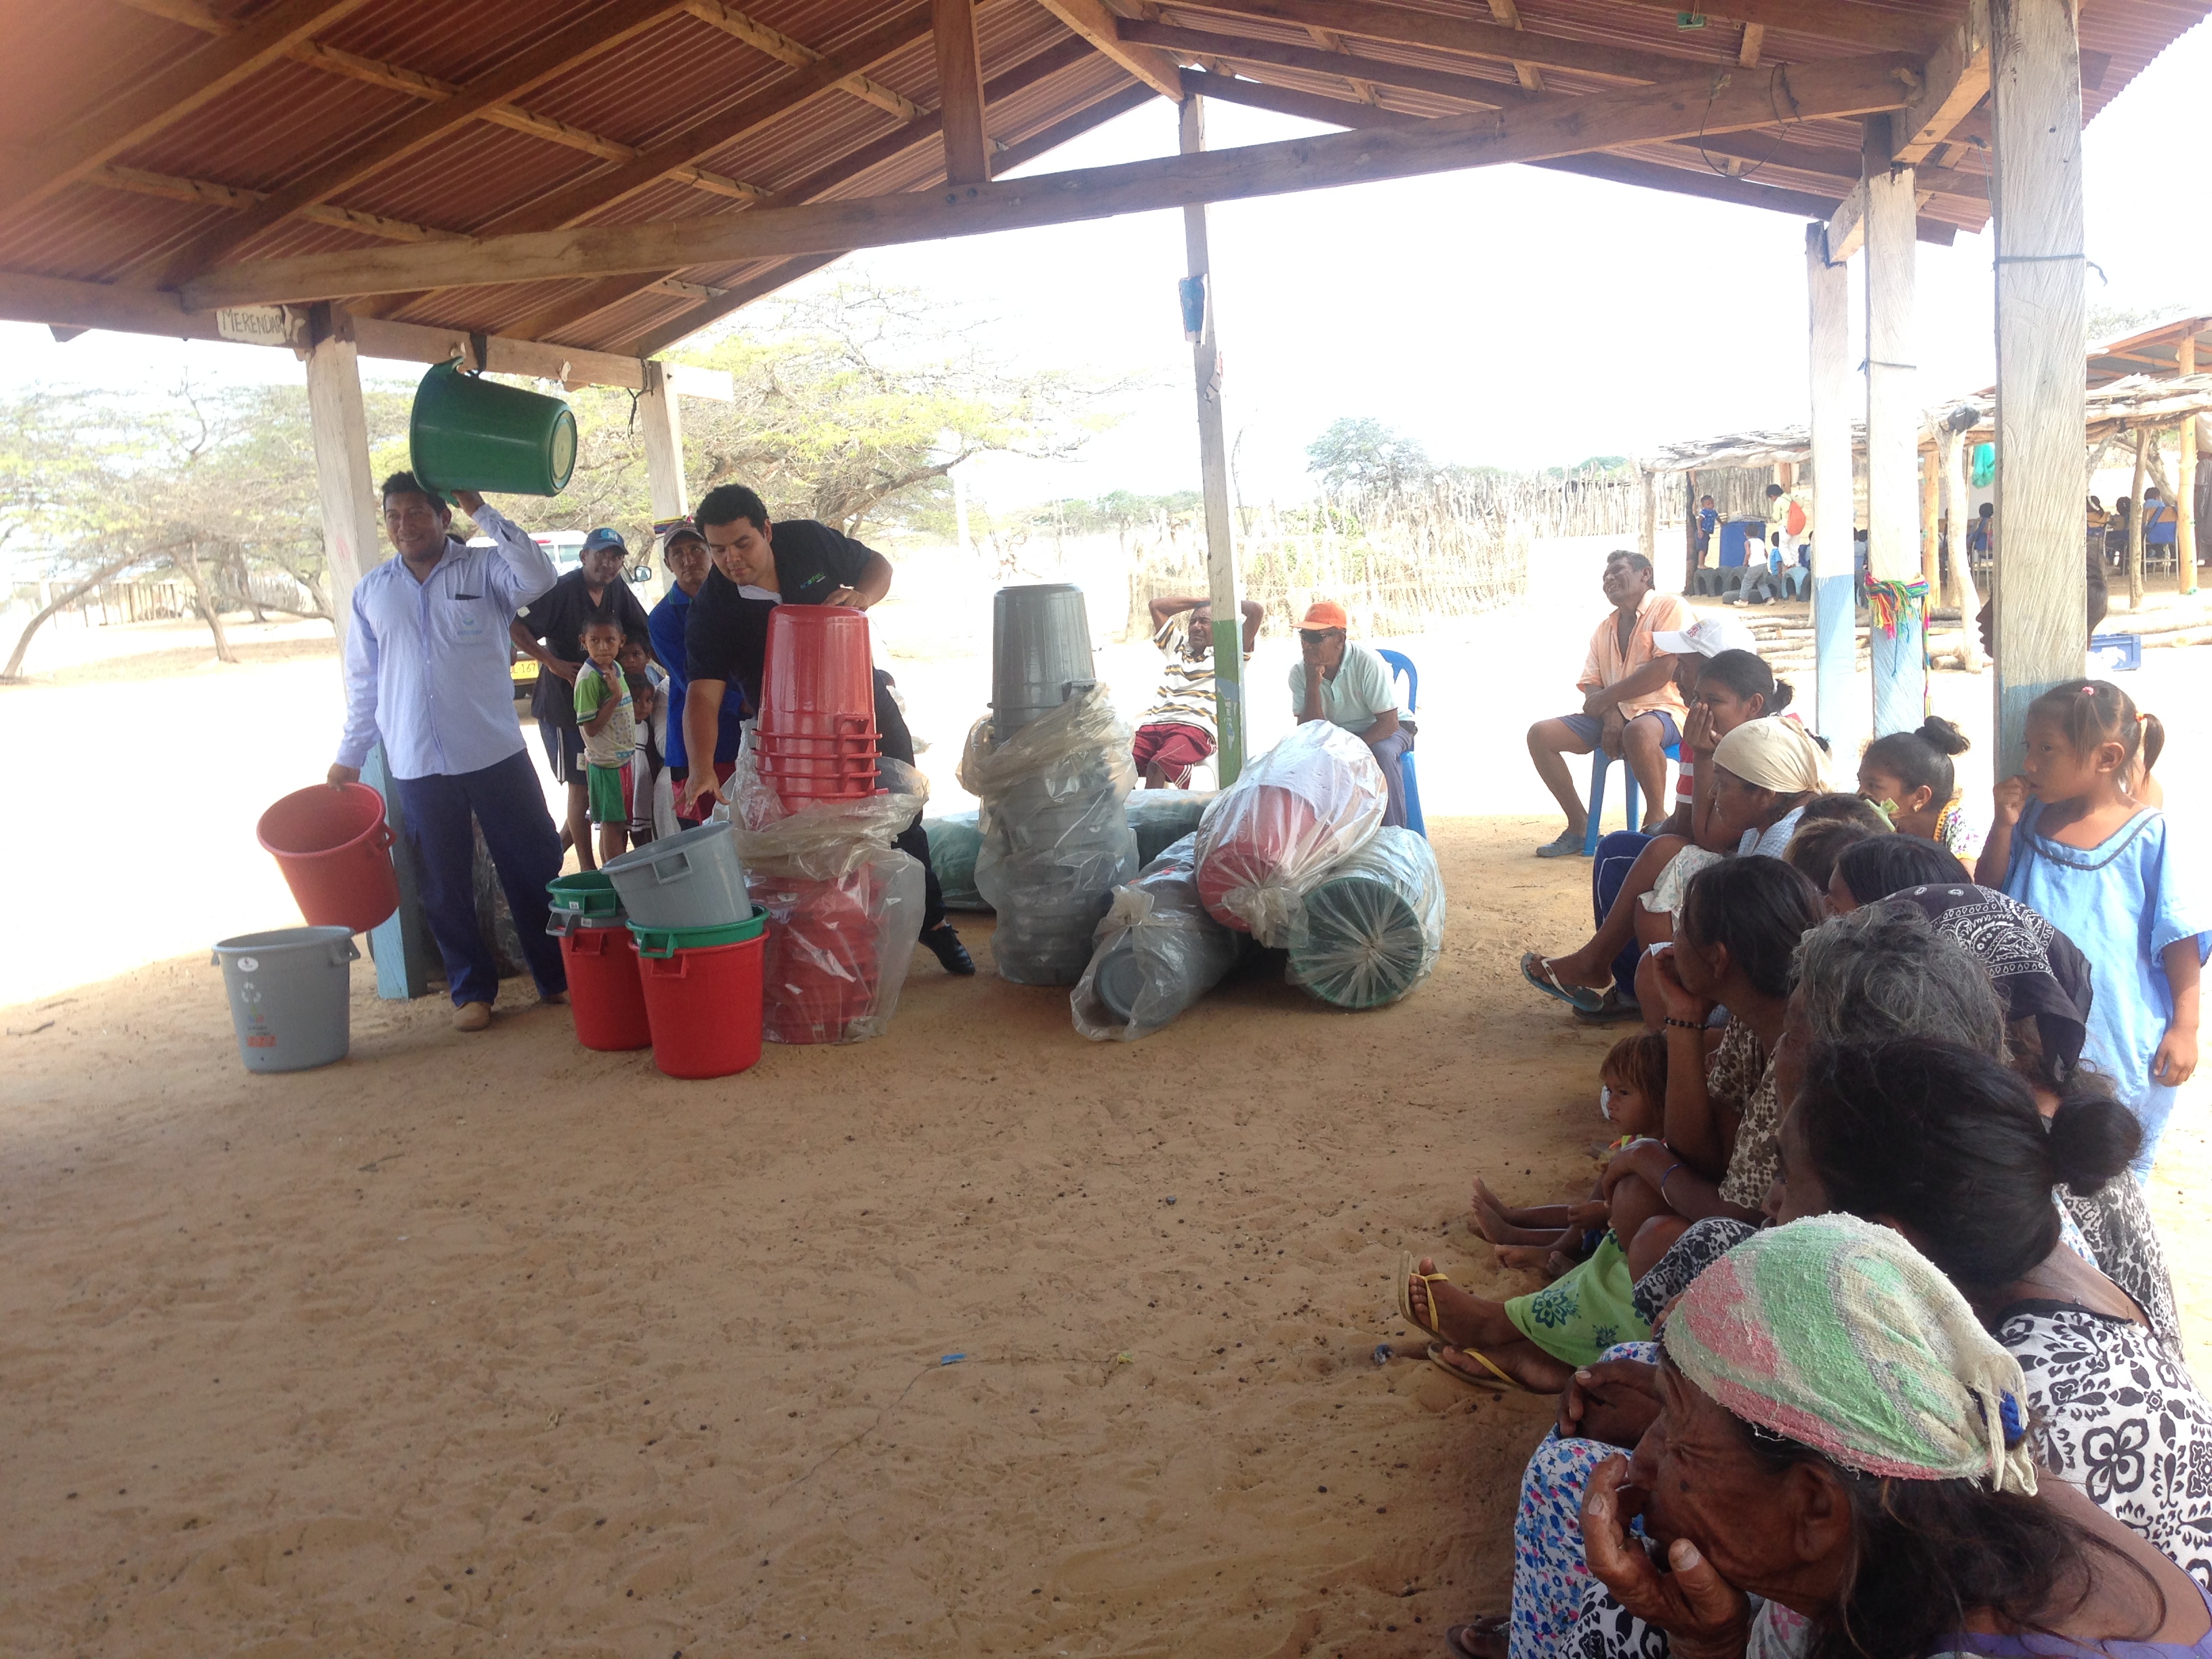 Plan Fronteras para la Prosperidad de la Cancillería y la fundación Ecosfera entregaron a la comunidad Wuayúu-Playa kits para separación de residuos en los hogares 